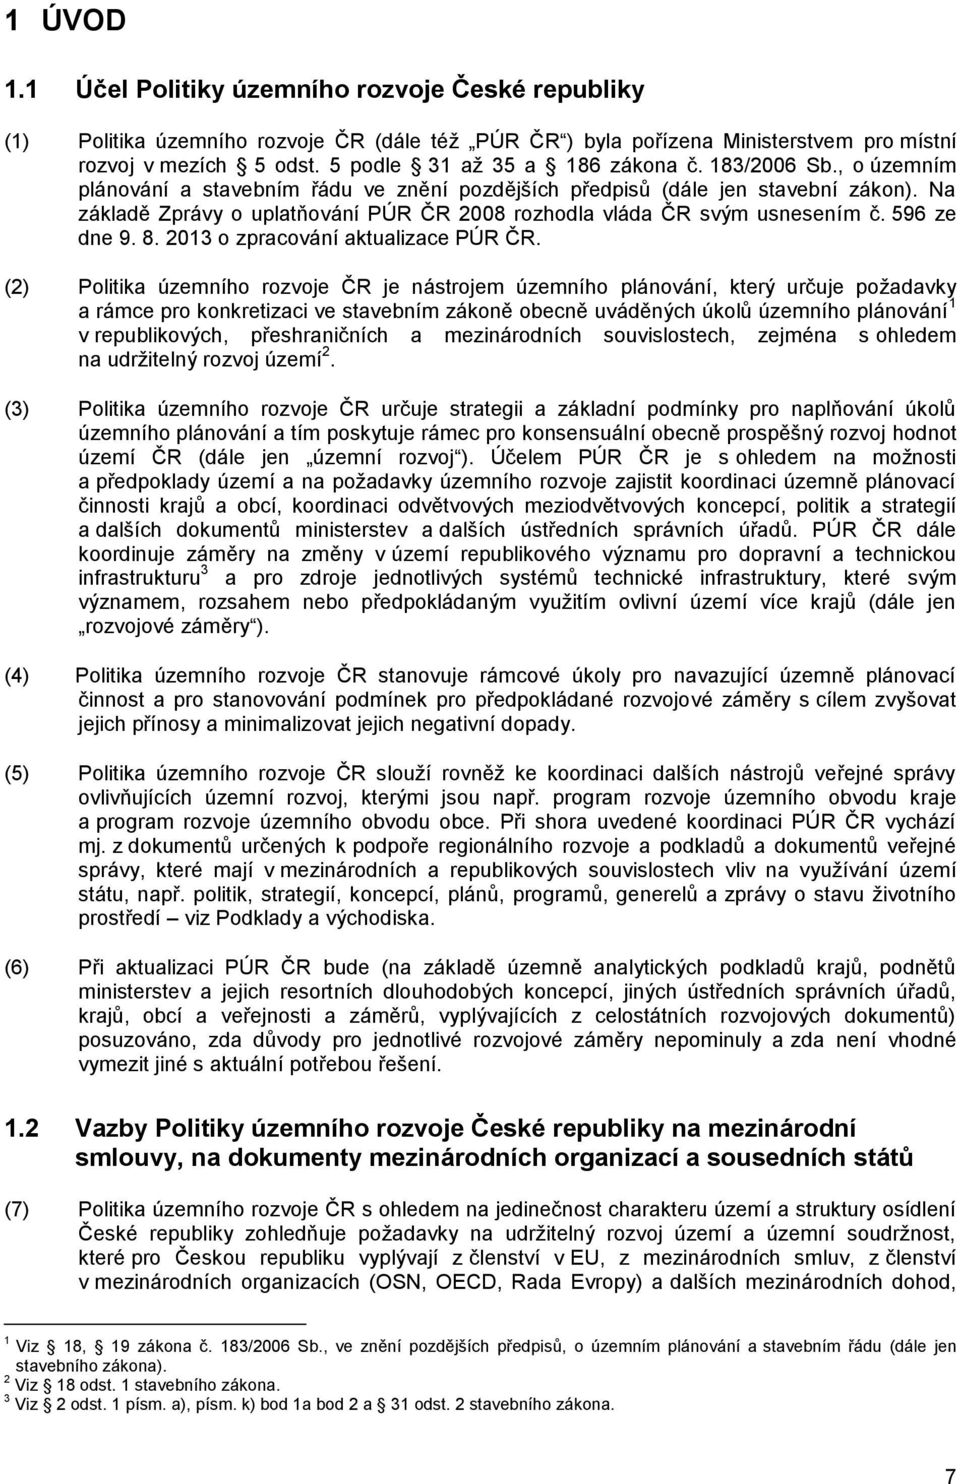 Na základě Zprávy o uplatňování PÚR ČR 2008 rozhodla vláda ČR svým usnesením č. 596 ze dne 9. 8. 2013 o zpracování aktualizace PÚR ČR.